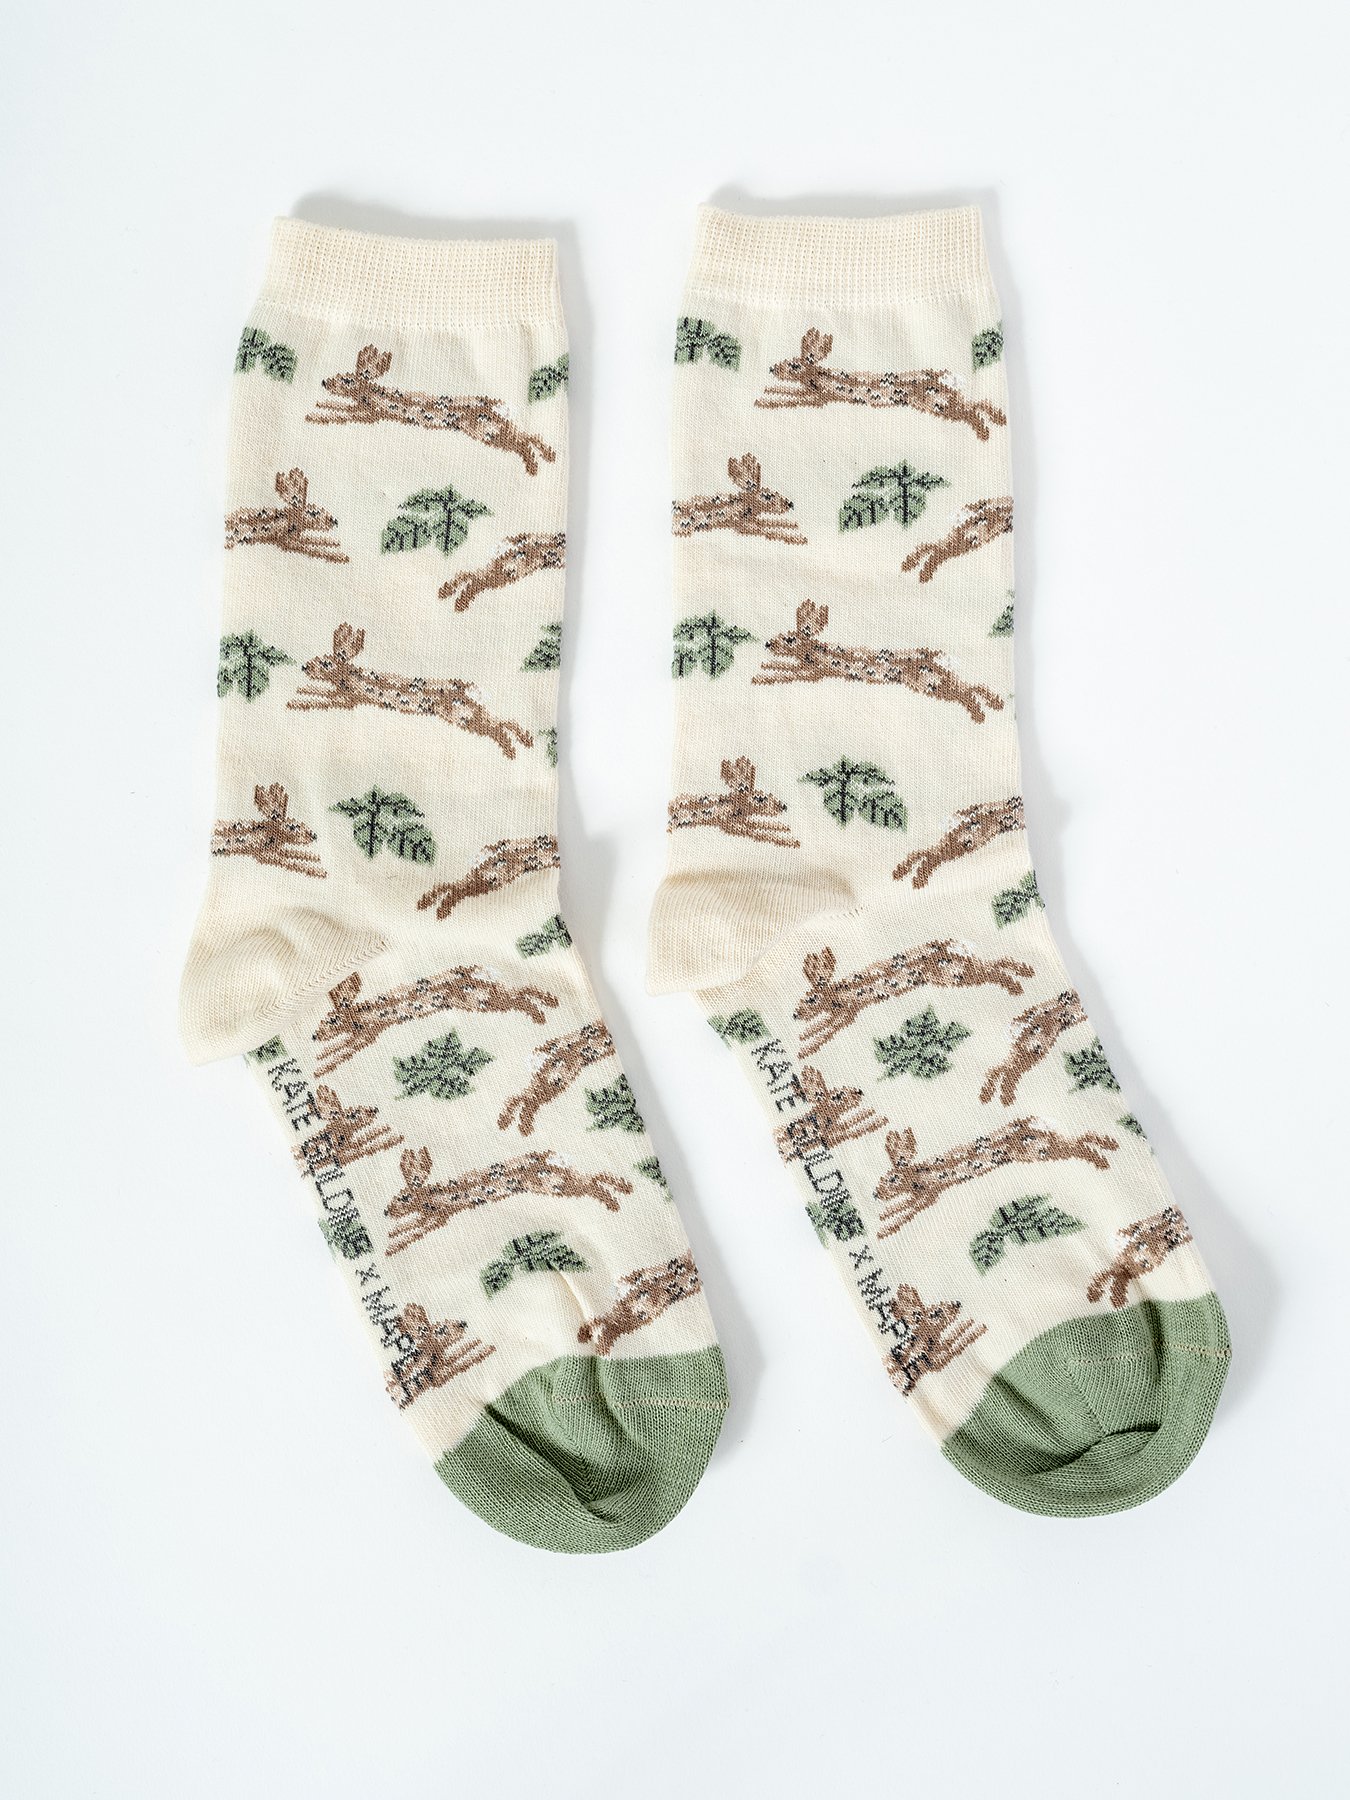 Kate Golding x Maple socks